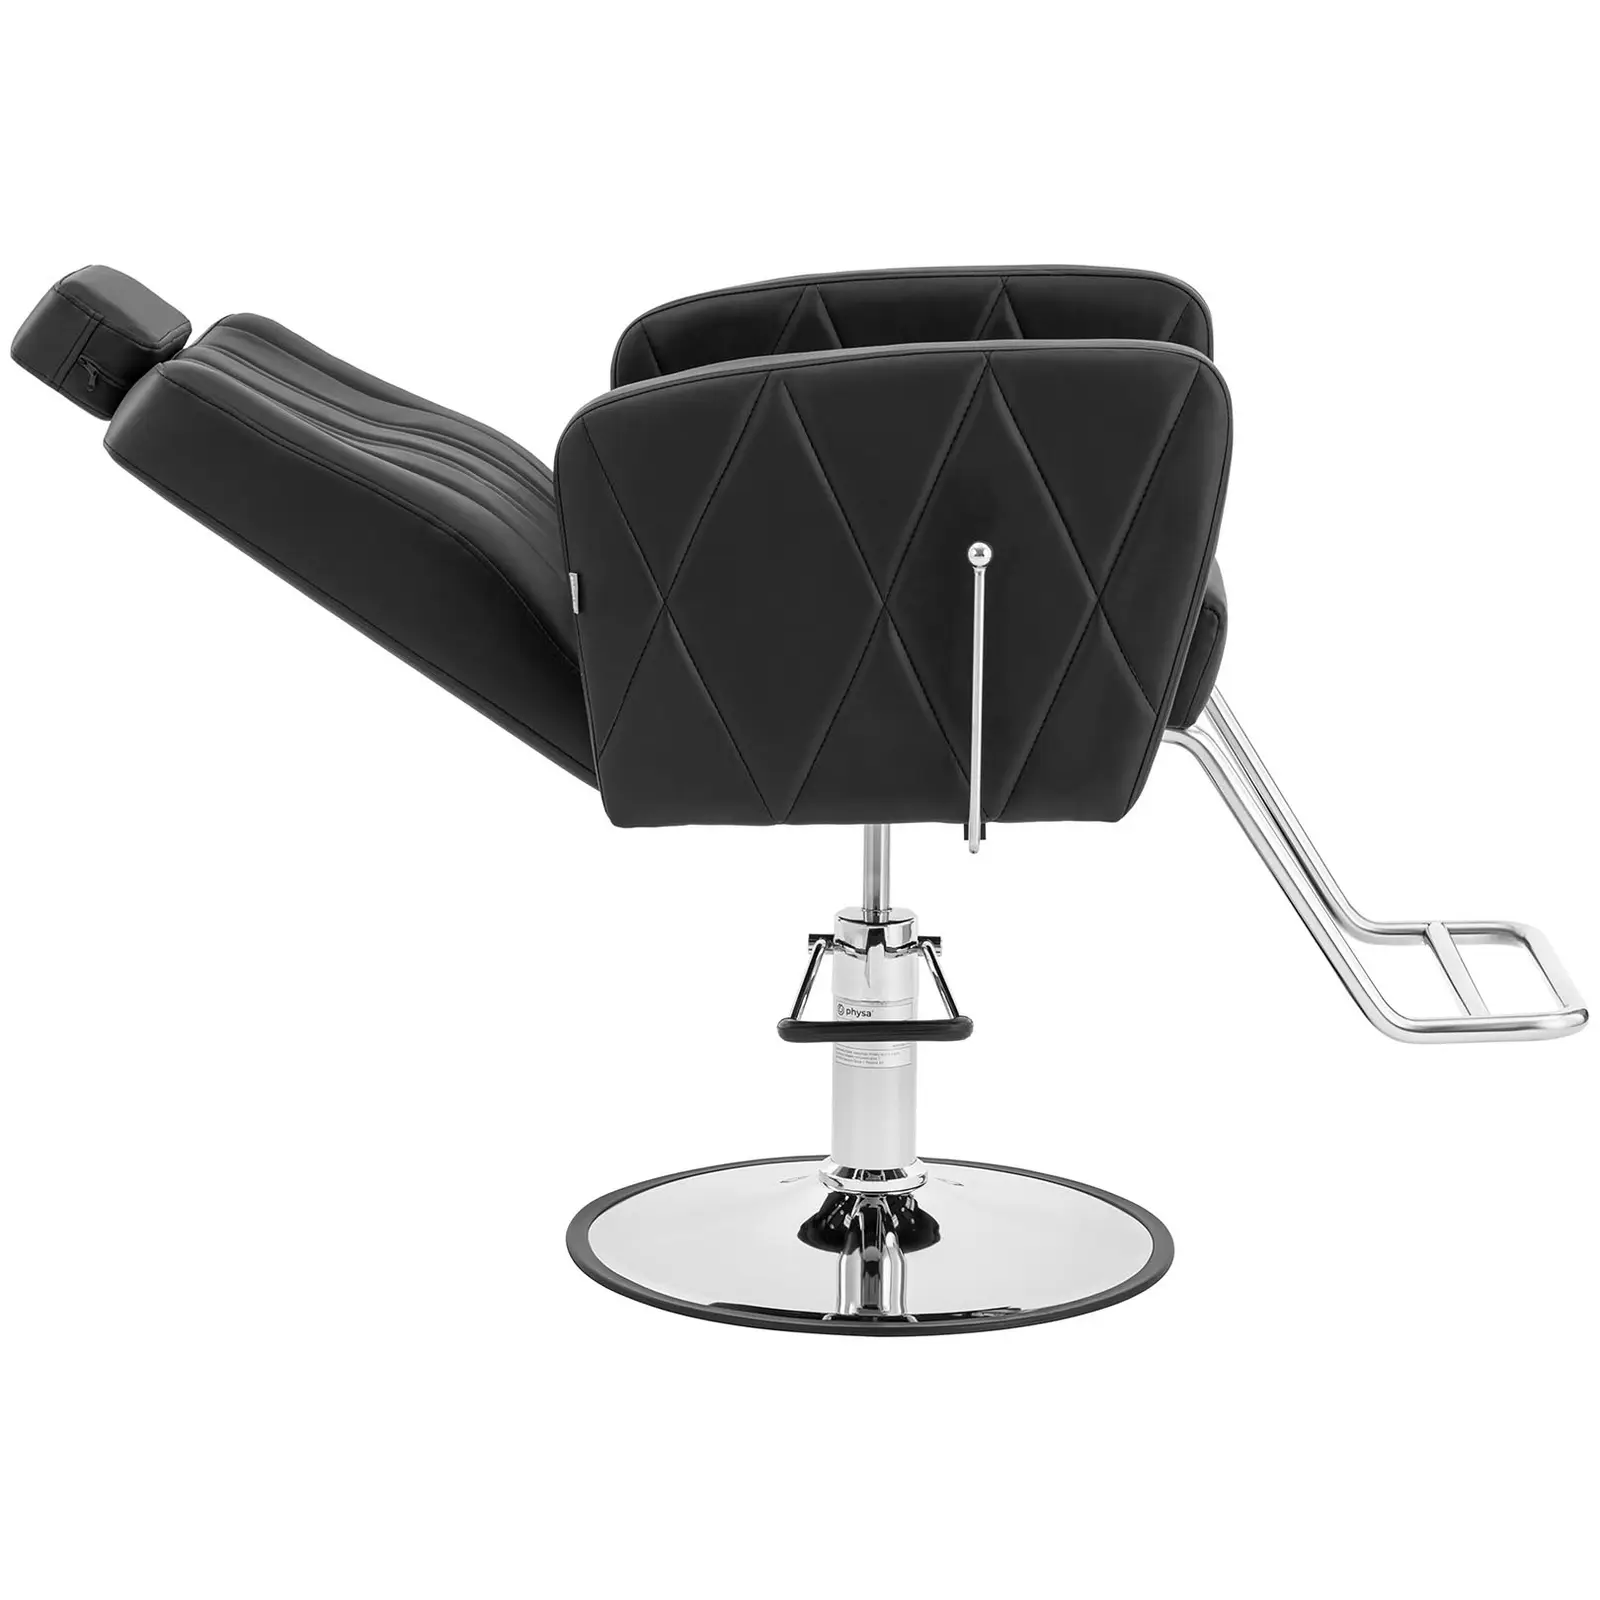 Fauteuil de coiffeur avec repose-pieds - 990-1140 mm - 200 kg - Noir, Argent